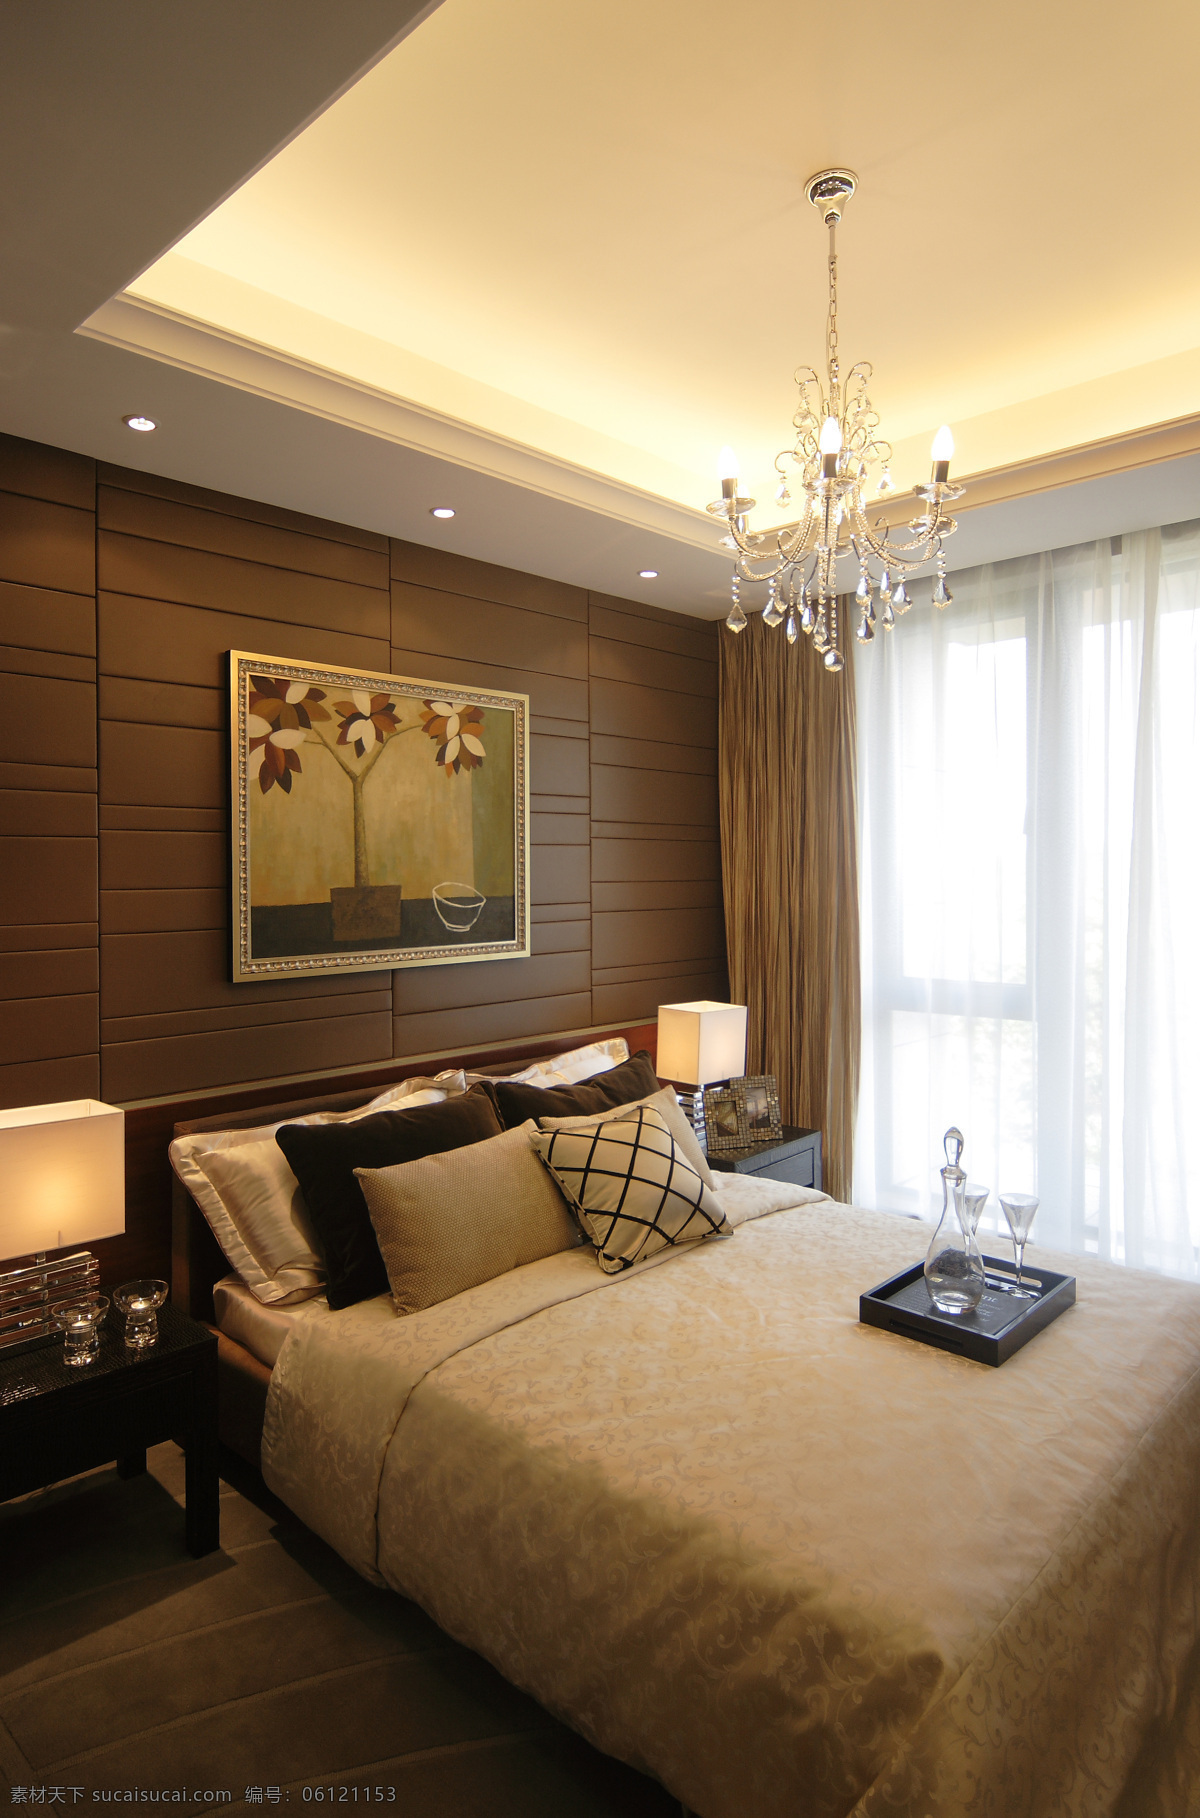 现代 时尚 卧室 格子 花纹 抱枕 室内装修 效果图 褐色地板 卧室装修 褐色背景墙 暖色台灯